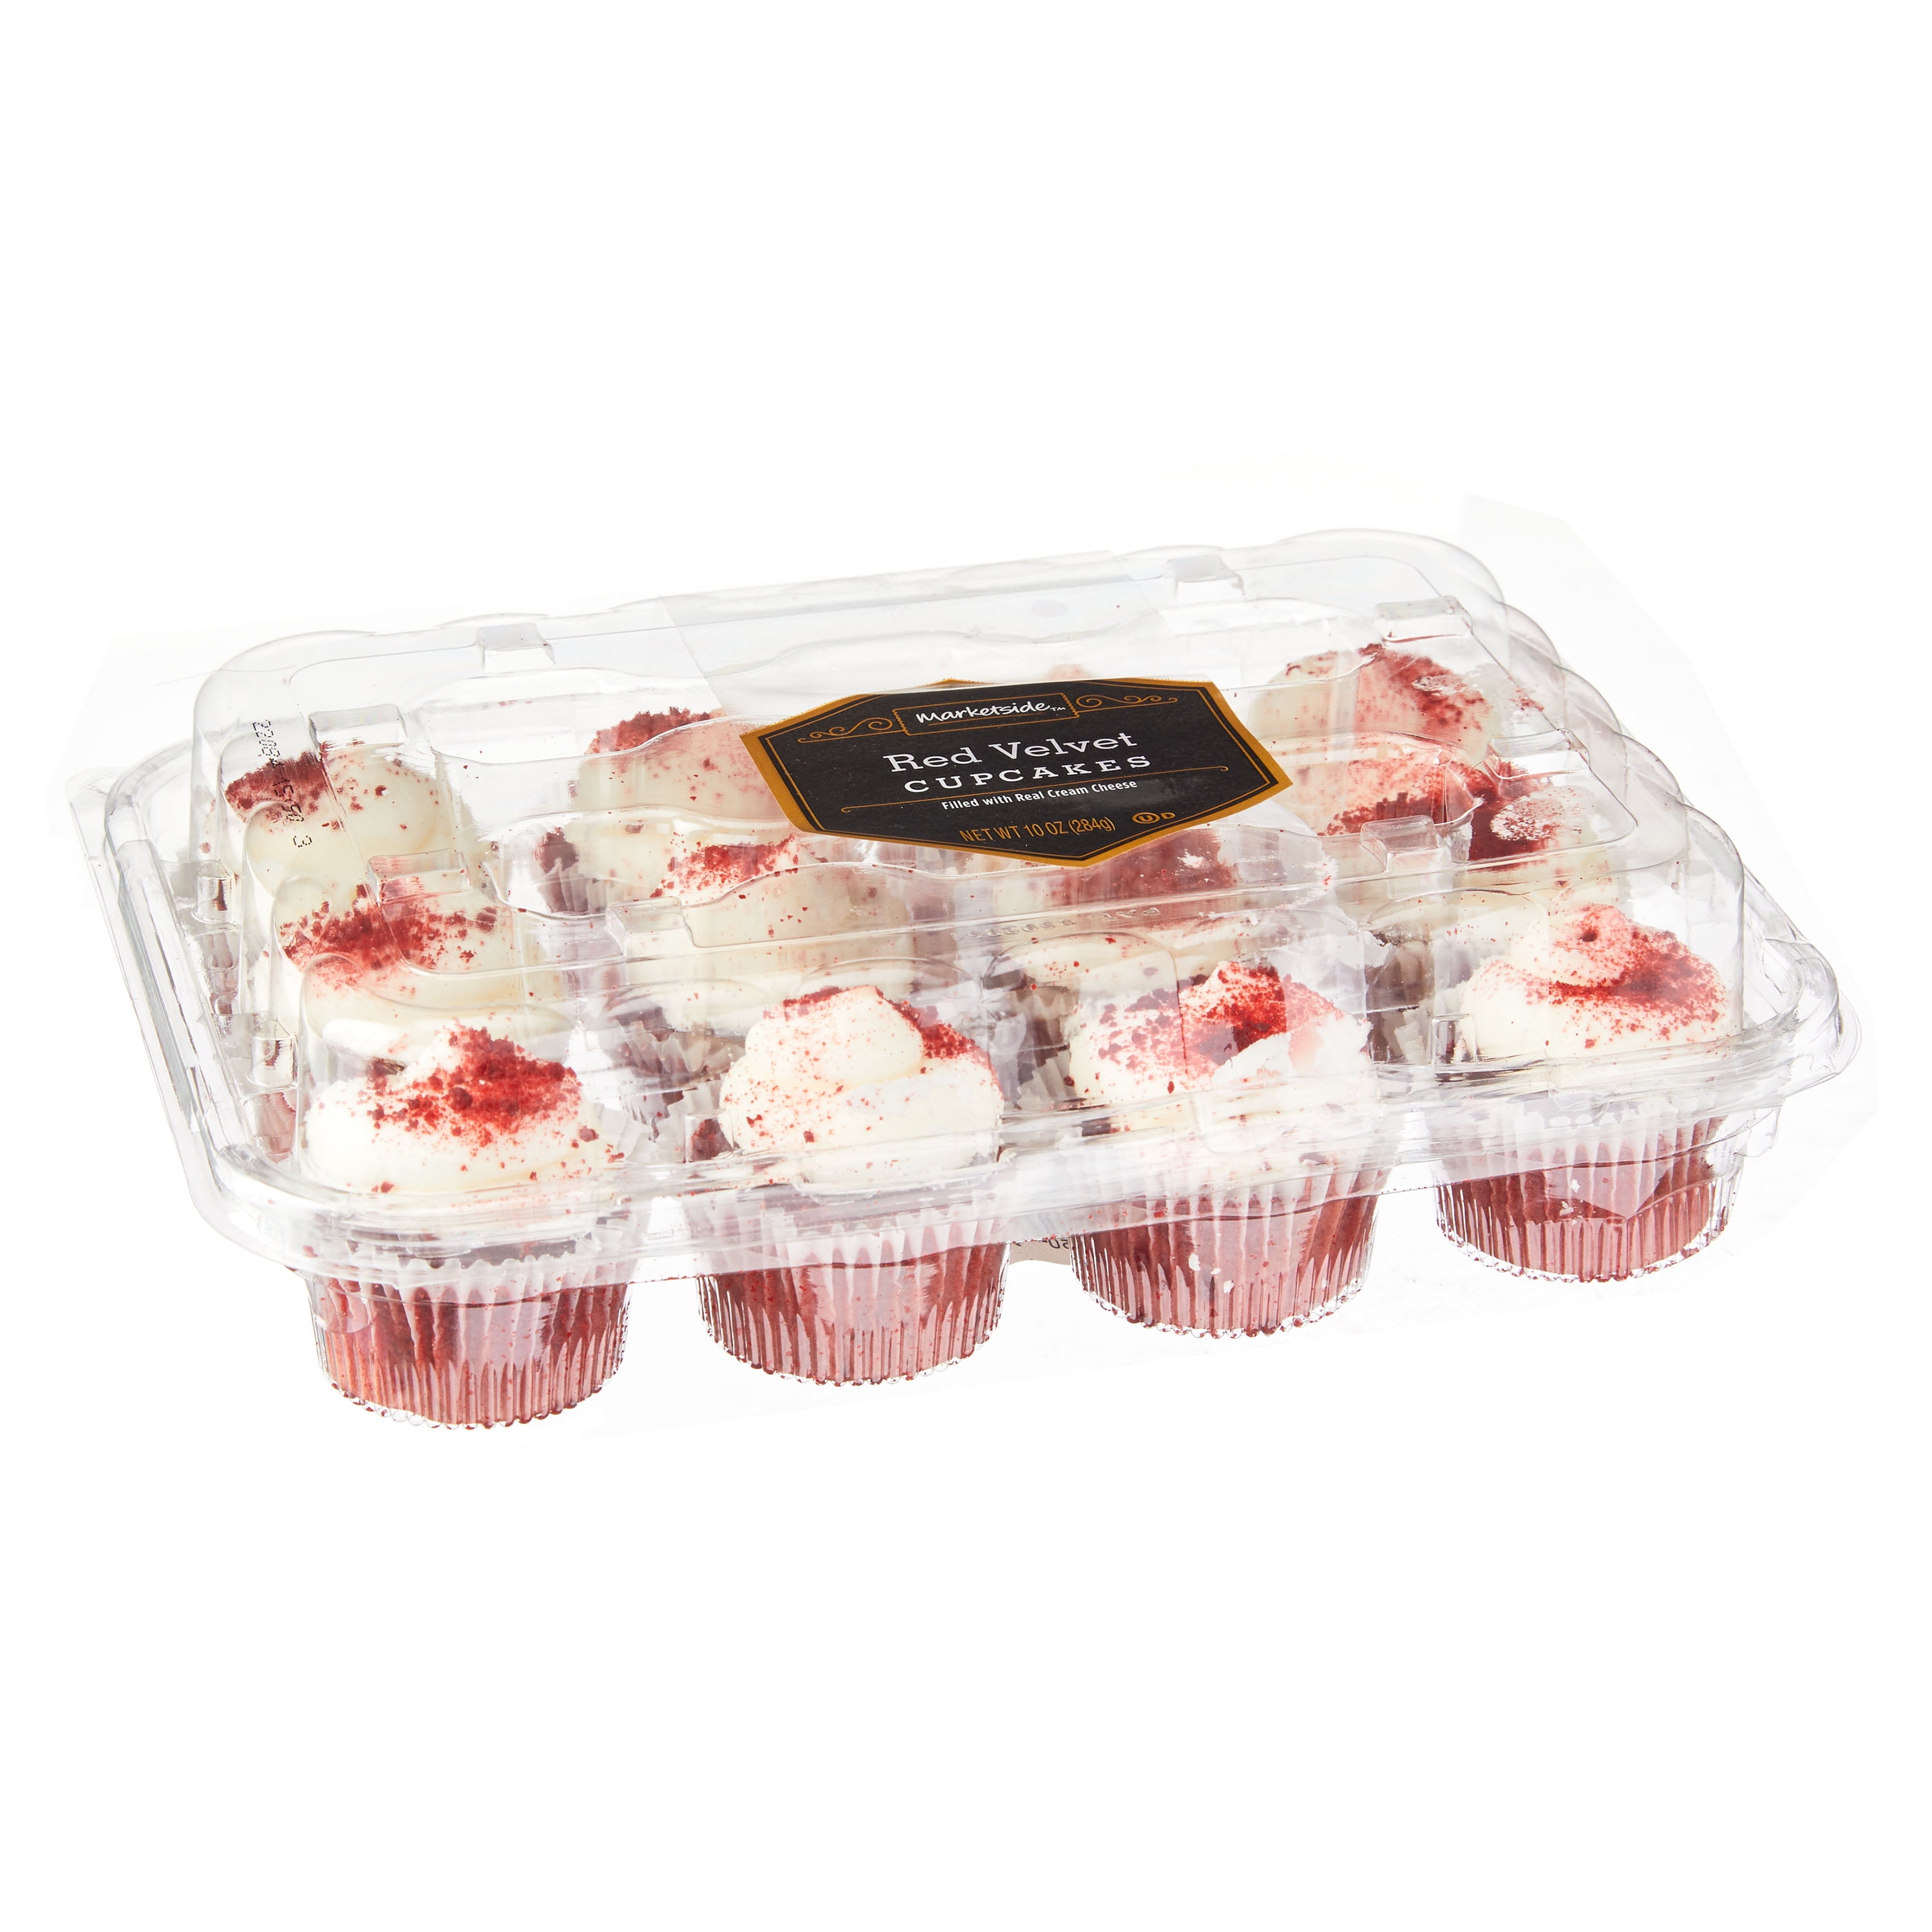 Marketside Red Velvet Mini Cupcakes, 10 oz, 12 Count